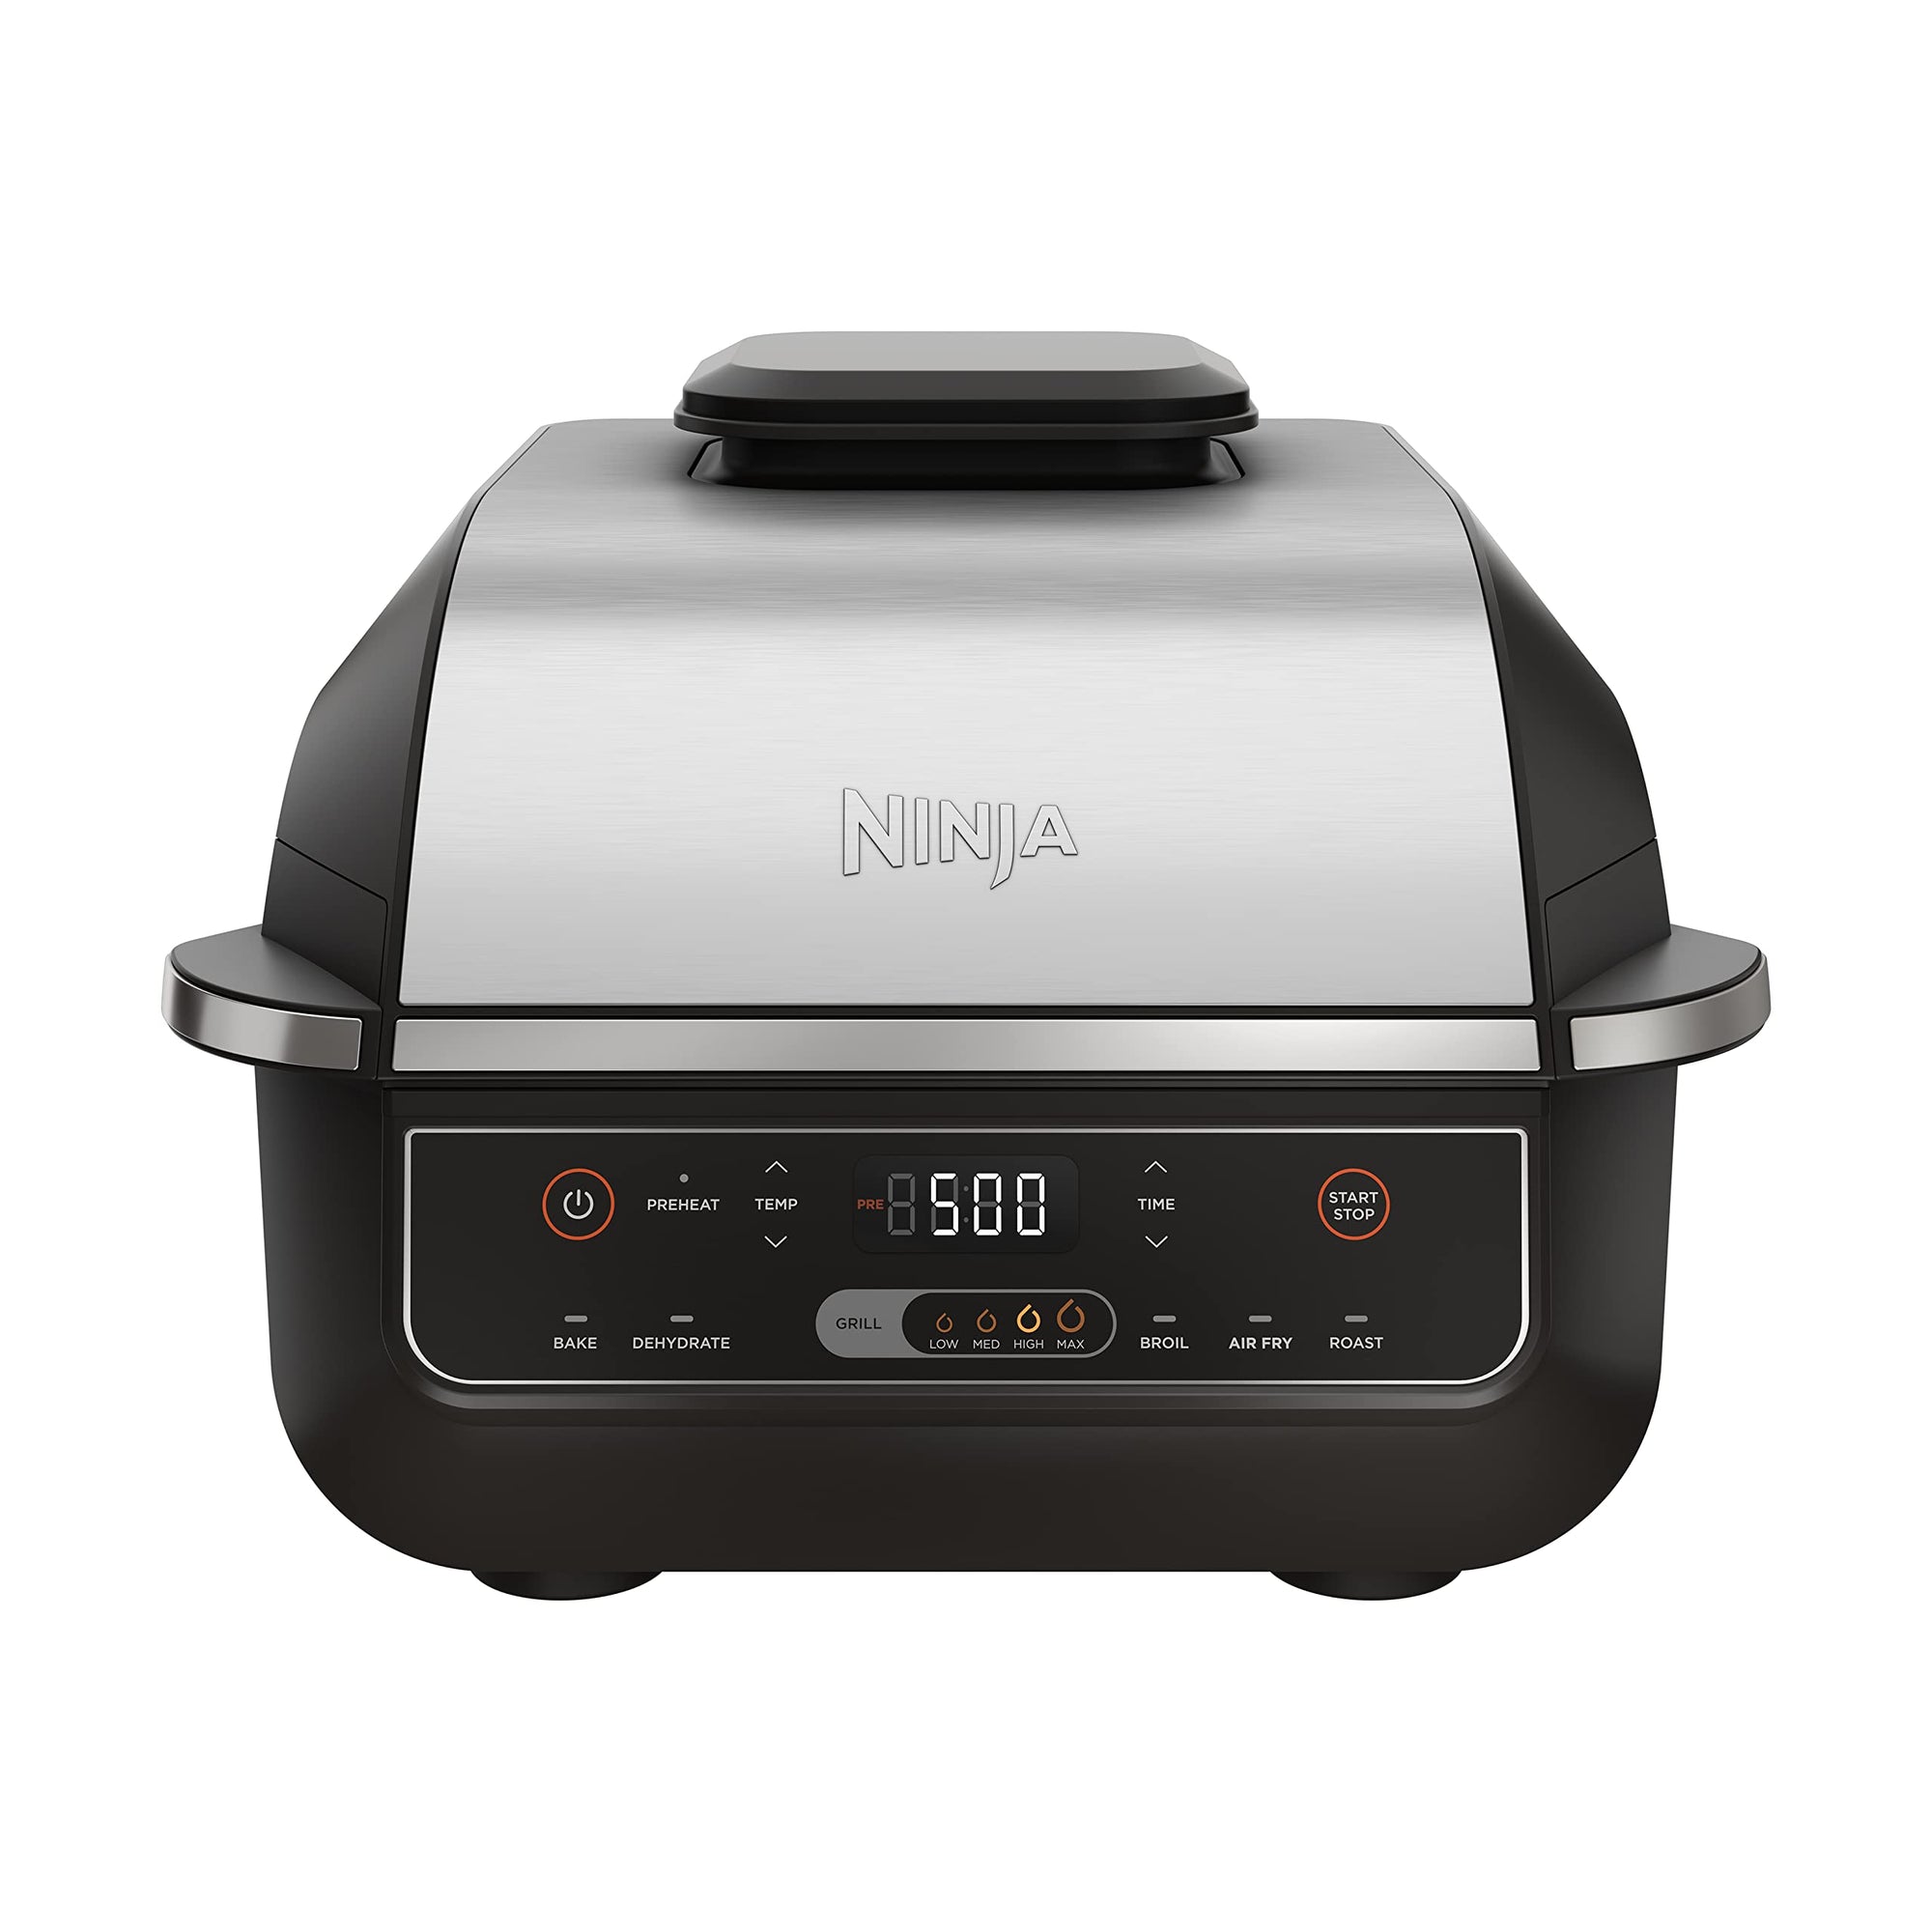 Ninja EG201 Foodi Домашний гриль 6-в-1 с функциями жарки, жарки, запекания, поджаривания и обезвоживания, 2-го поколения, можно мыть в посудомоечной машине, черный/серебристый